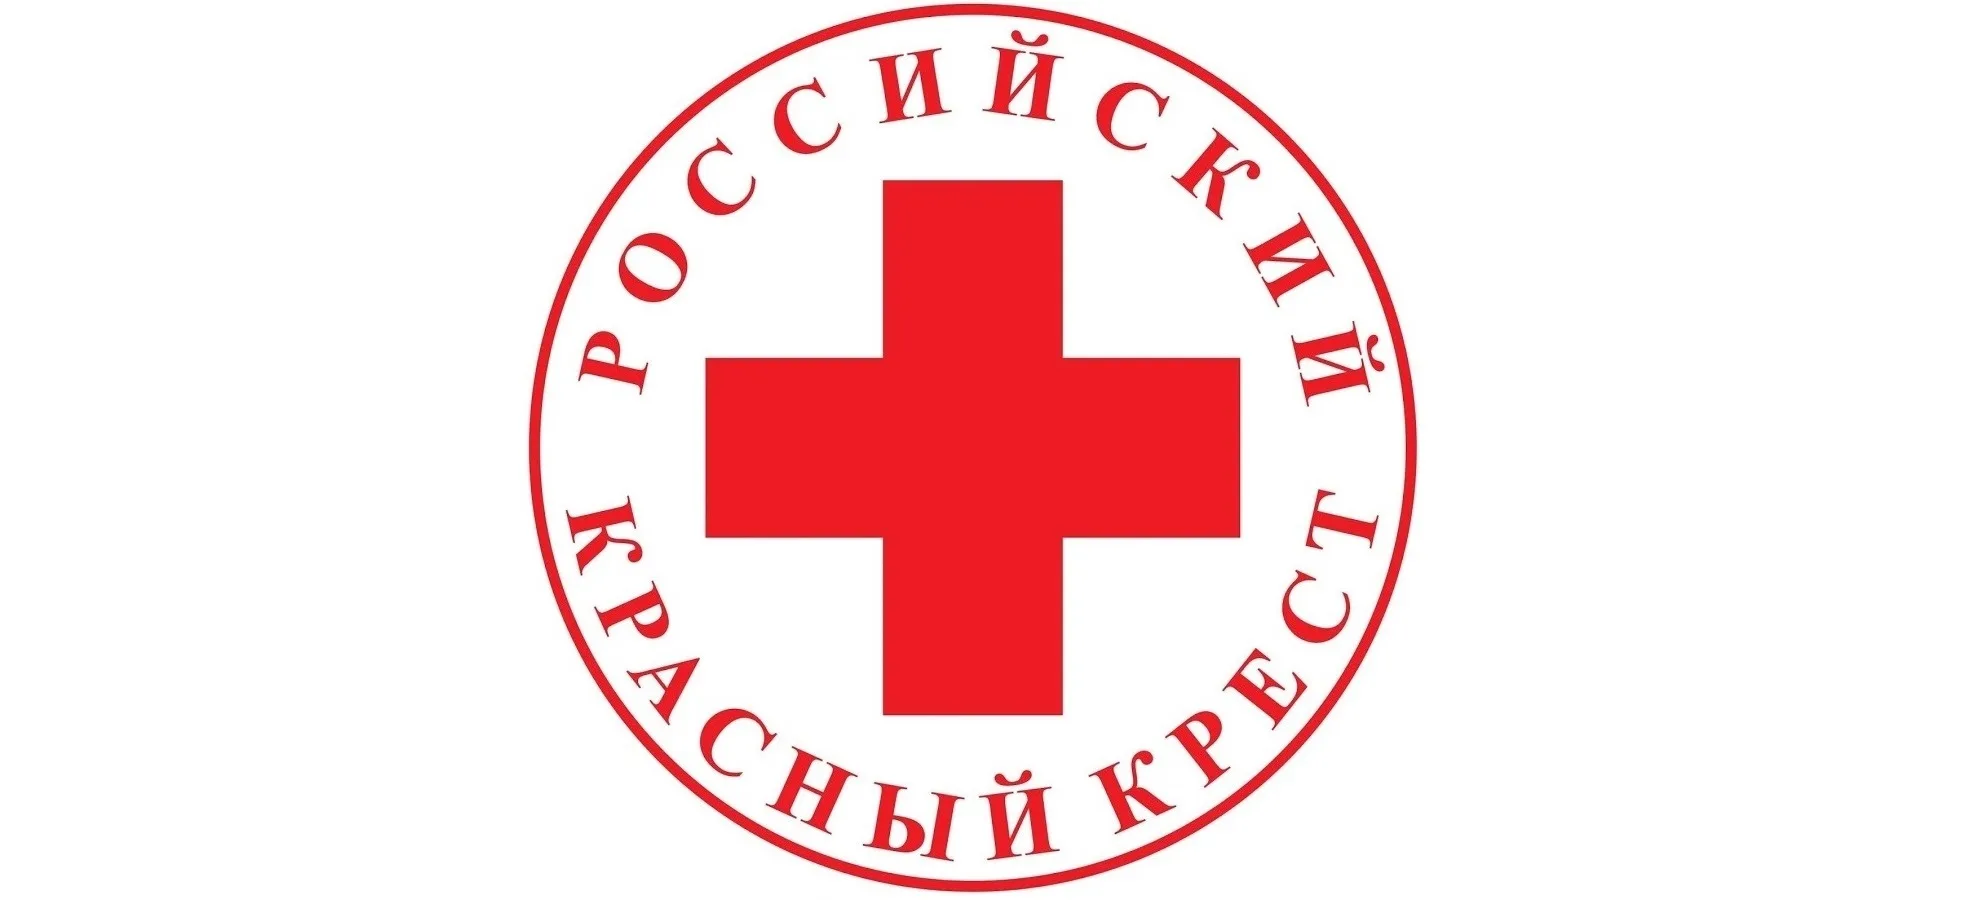 Общественная организация российский красный крест. Красный крест. Российский красный крес. Эмблема красного Креста. Российское общество красного Креста.